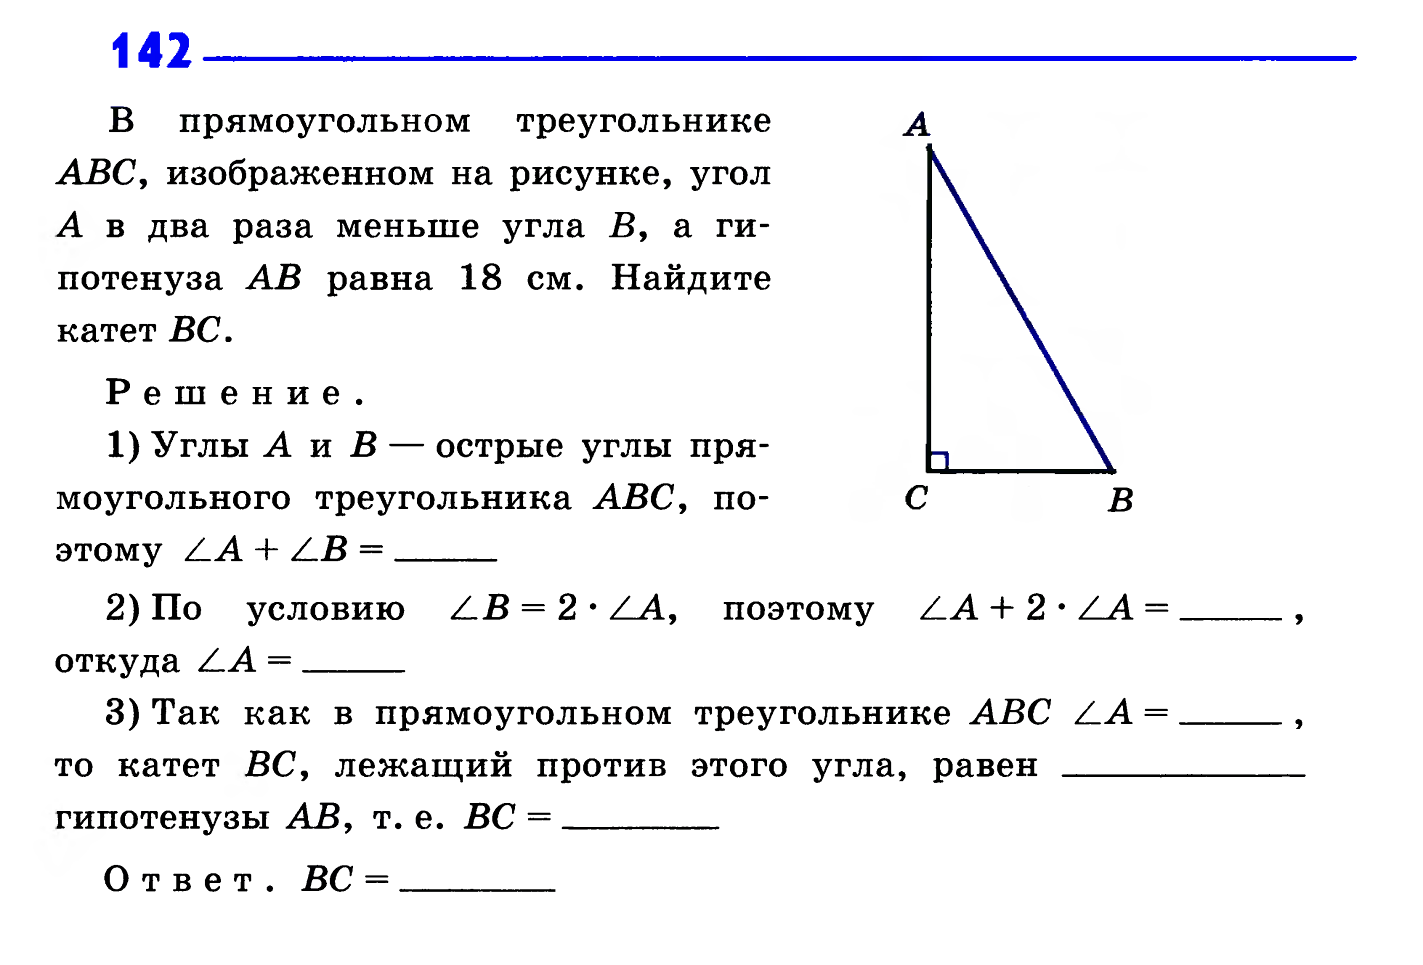 Урок на тему: «Прямоугольные треугольники»